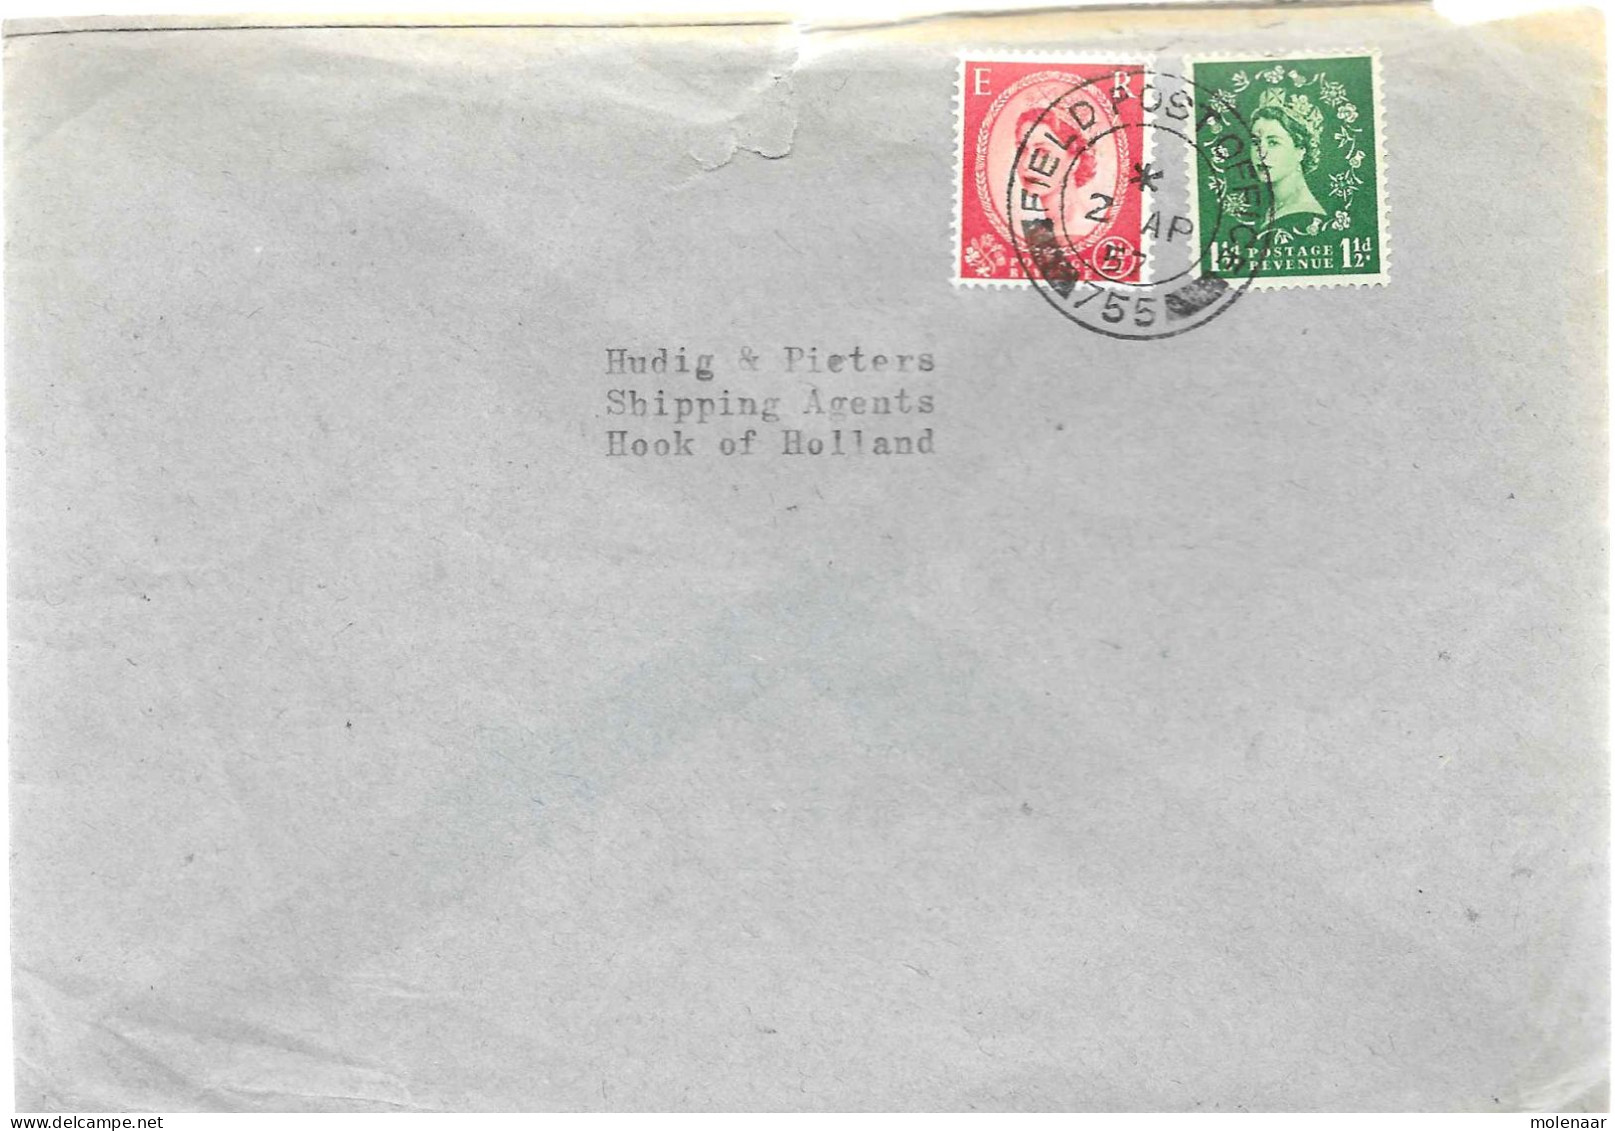 Postzegels > Europa > Groot-Brittannië >1952-2022 Elizabeth II >Brief Met No, 259-261 Field Post Office 755 (17498) - Brieven En Documenten